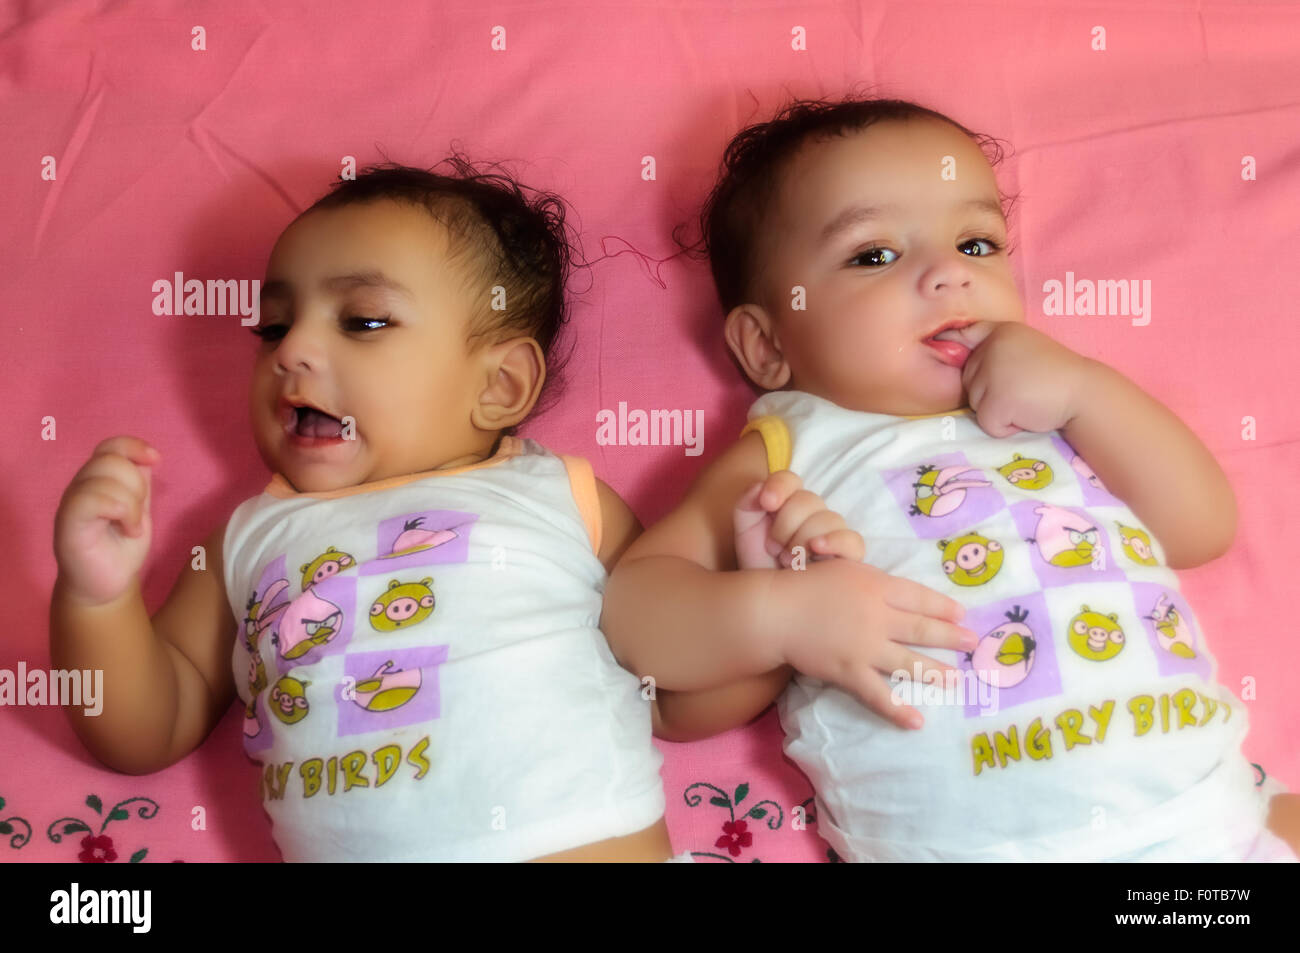 beautiful twin babies